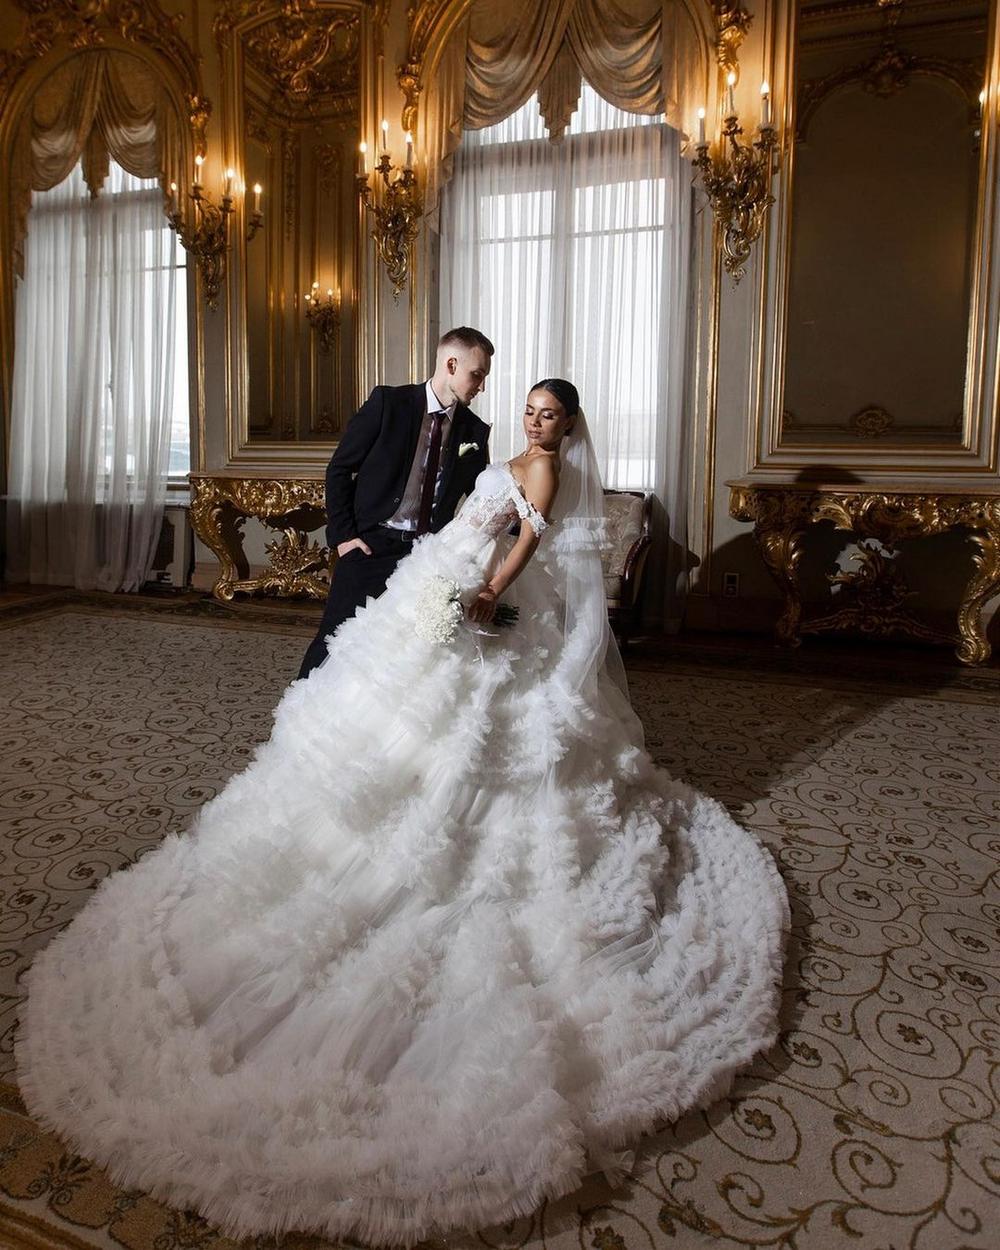 Запоминающиеся свадебные фото: 10 идей для фотосессии